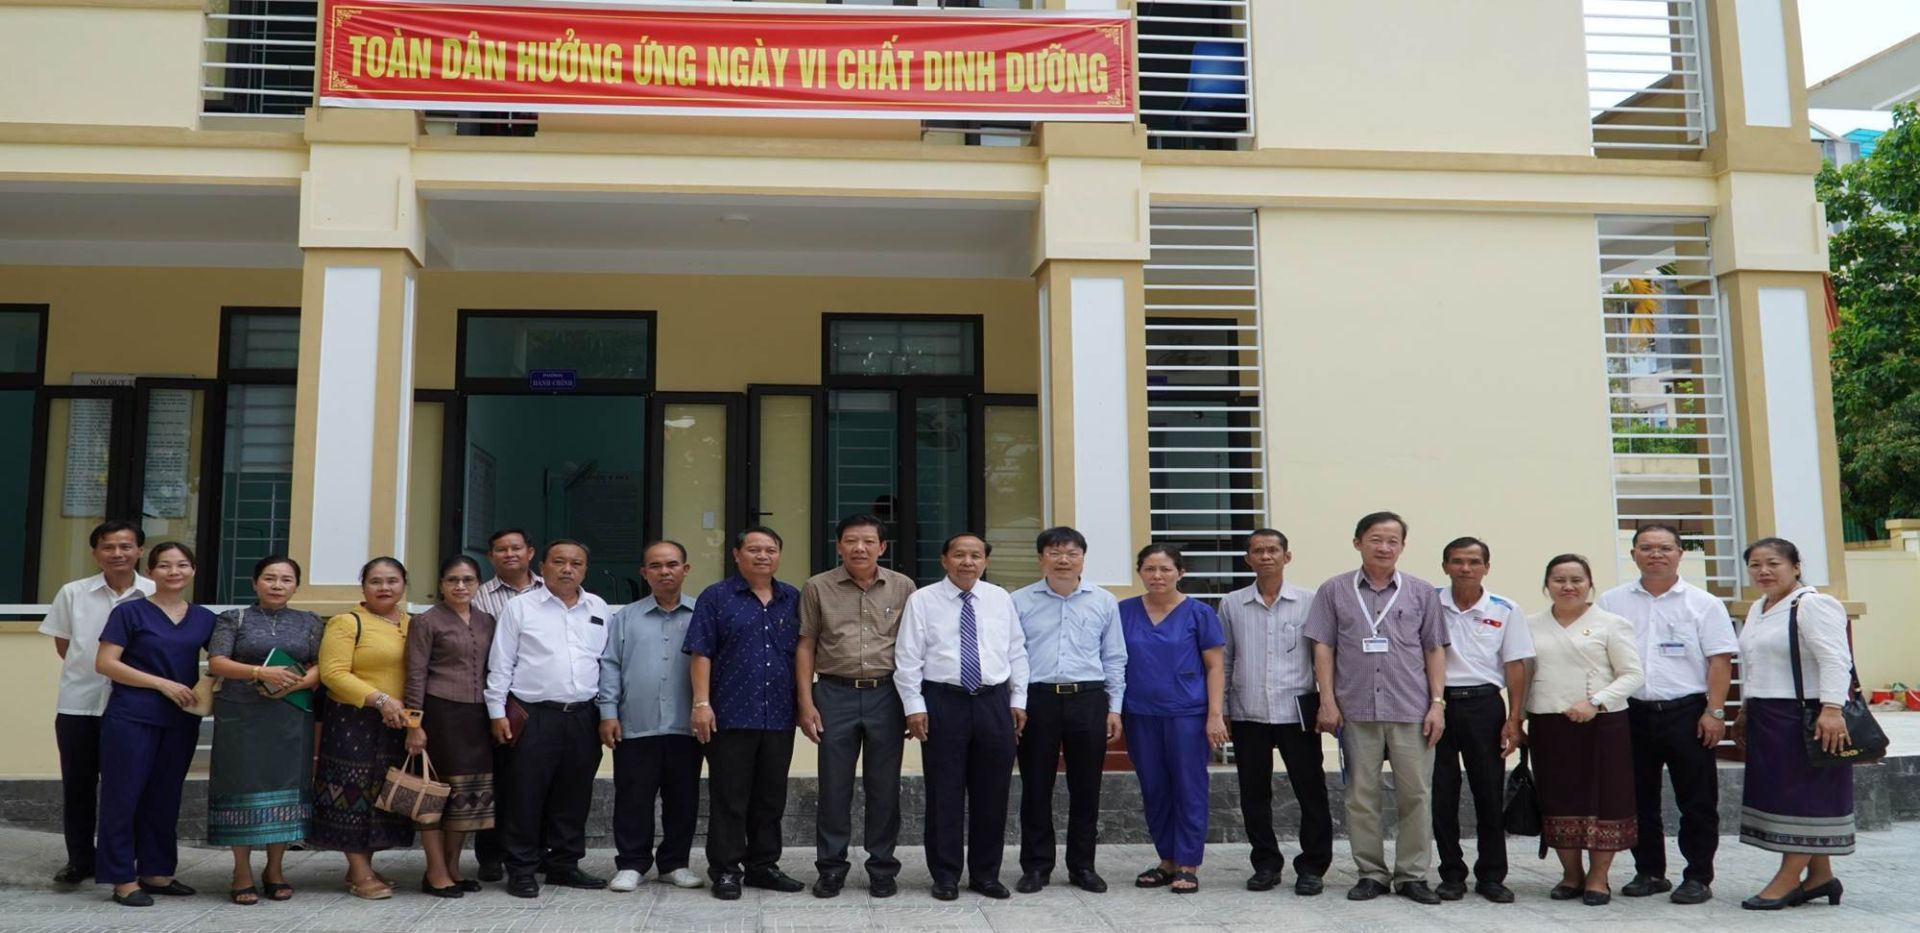 công tác chăm sóc sức khỏe nhân dân trên địa bàn tỉnh Quảng Bình luôn nhận được sự quan tâm lãnh đạo, chỉ đạo của Tỉnh ủy, HĐND, UBND tỉnh